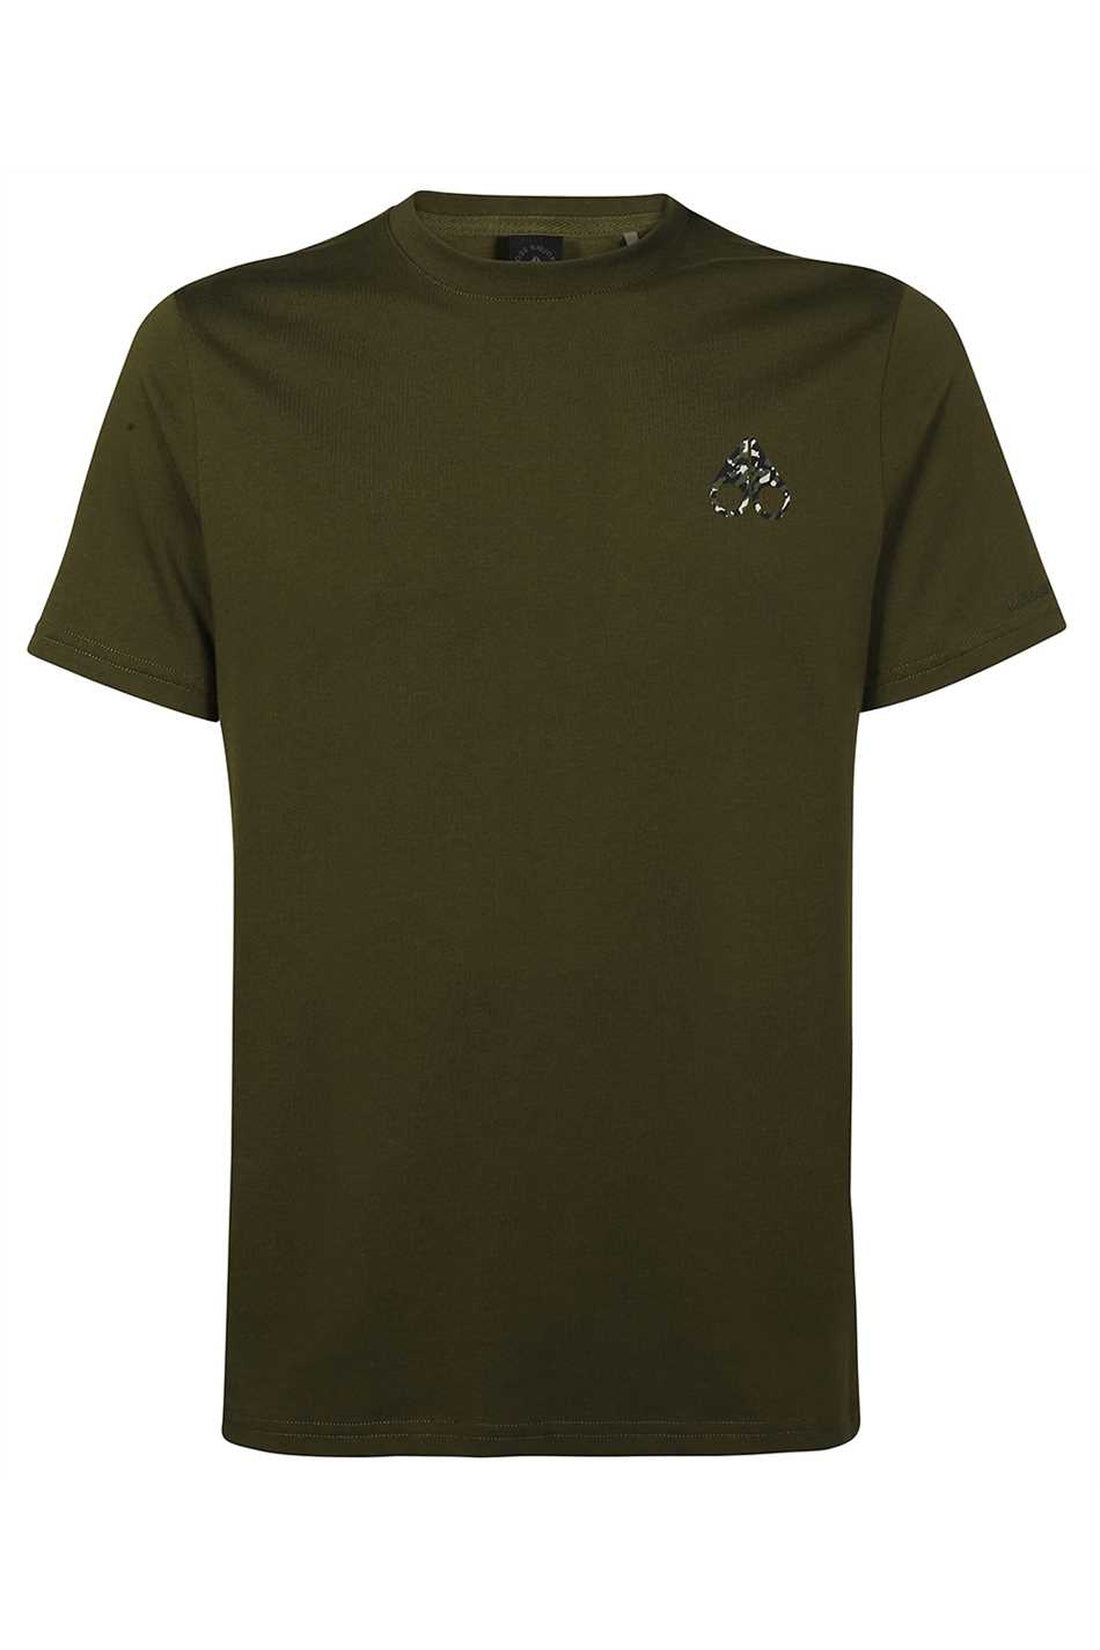 Moose Knuckles-OUTLET-SALE-Logo cotton t-shirt-ARCHIVIST